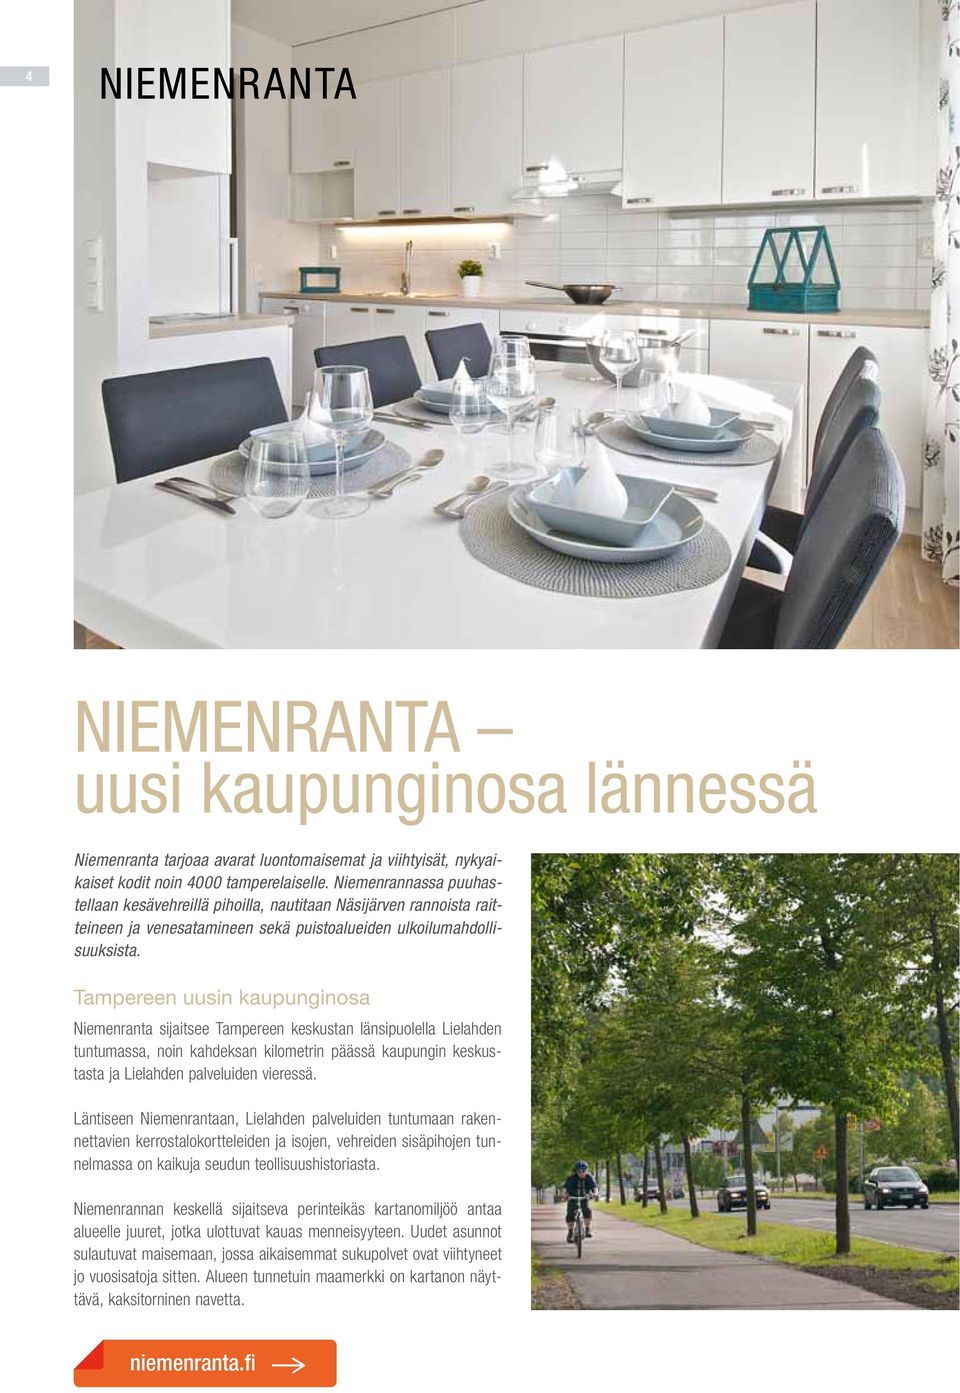 Tampereen uusin kaupunginosa Niemenranta sijaitsee Tampereen keskustan länsipuolella Lielahden tuntumassa, noin kahdeksan kilometrin päässä kaupungin keskustasta ja Lielahden palveluiden vieressä.